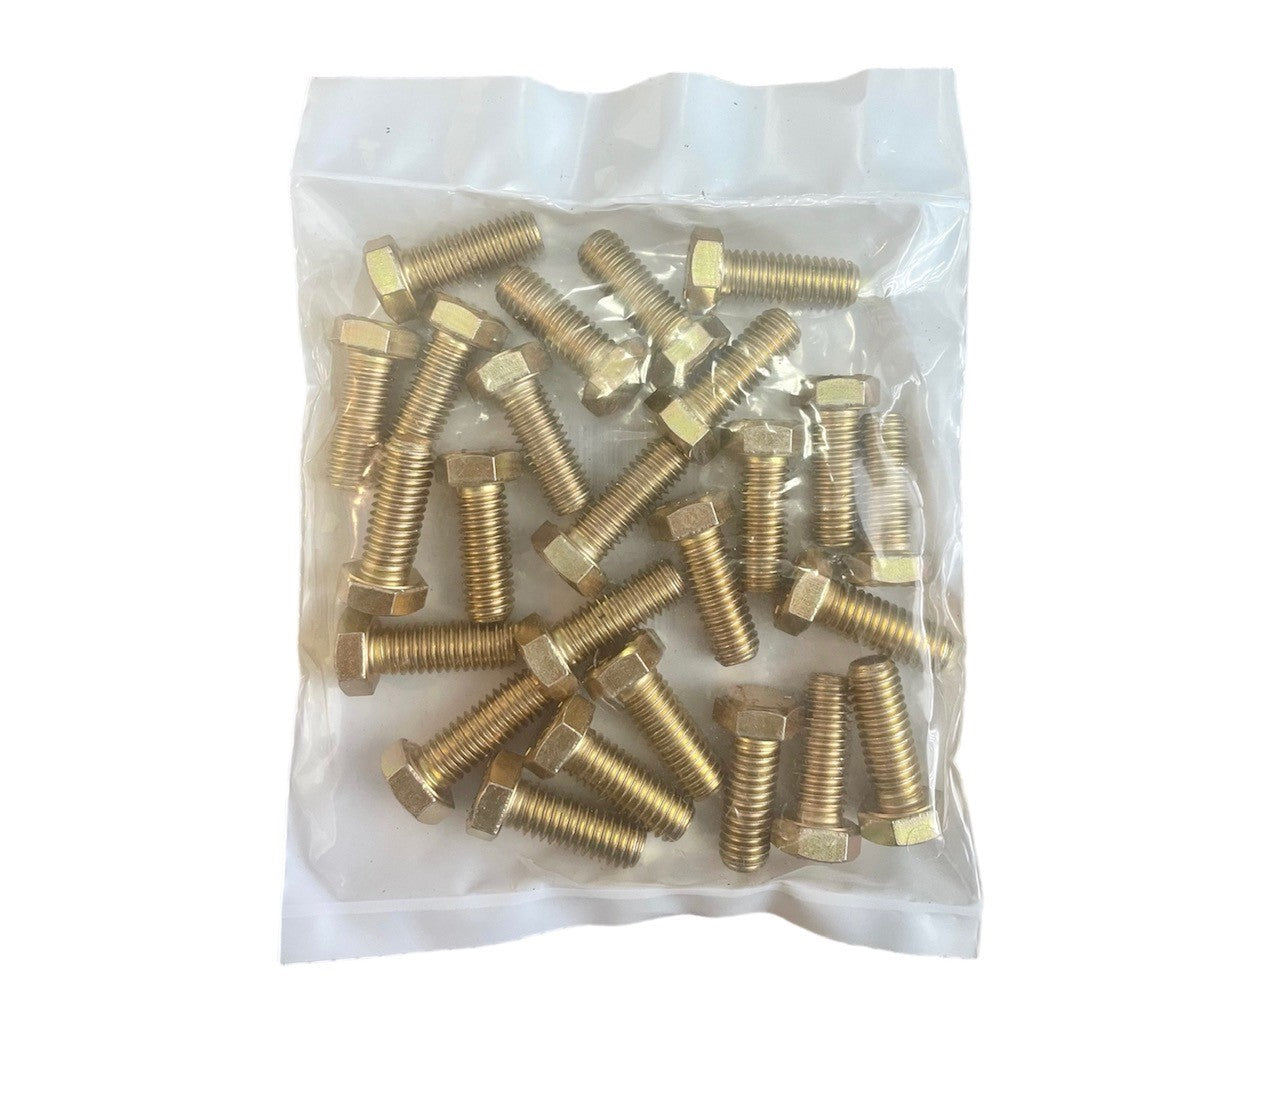 5,170 pcs Grade 8 Coarse Thread Nut Bolt & Washers Assortment Kit with Metal Bin